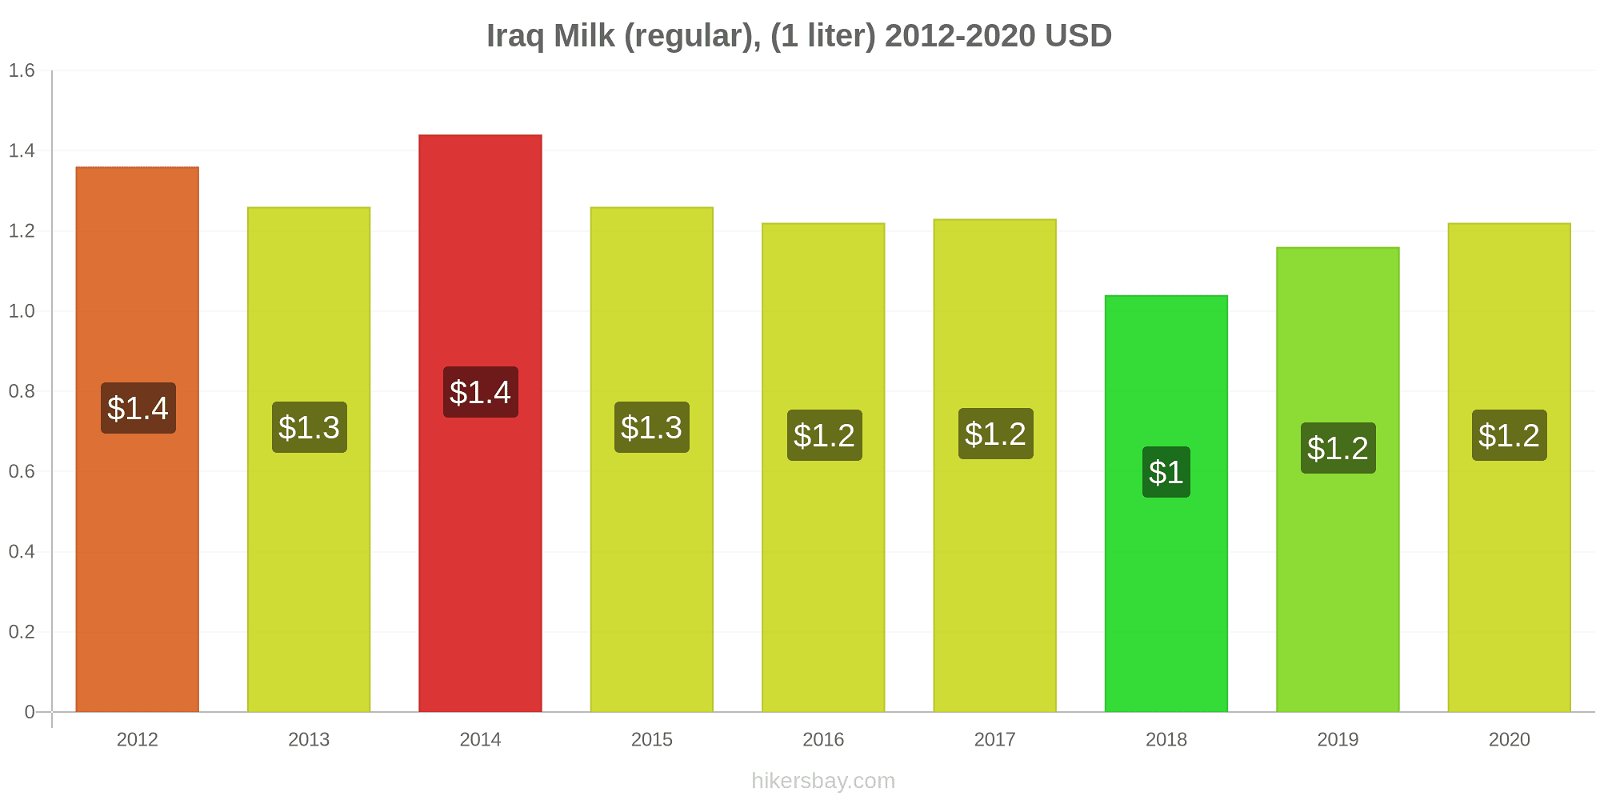 Iraq price changes Milk (regular), (1 liter) hikersbay.com